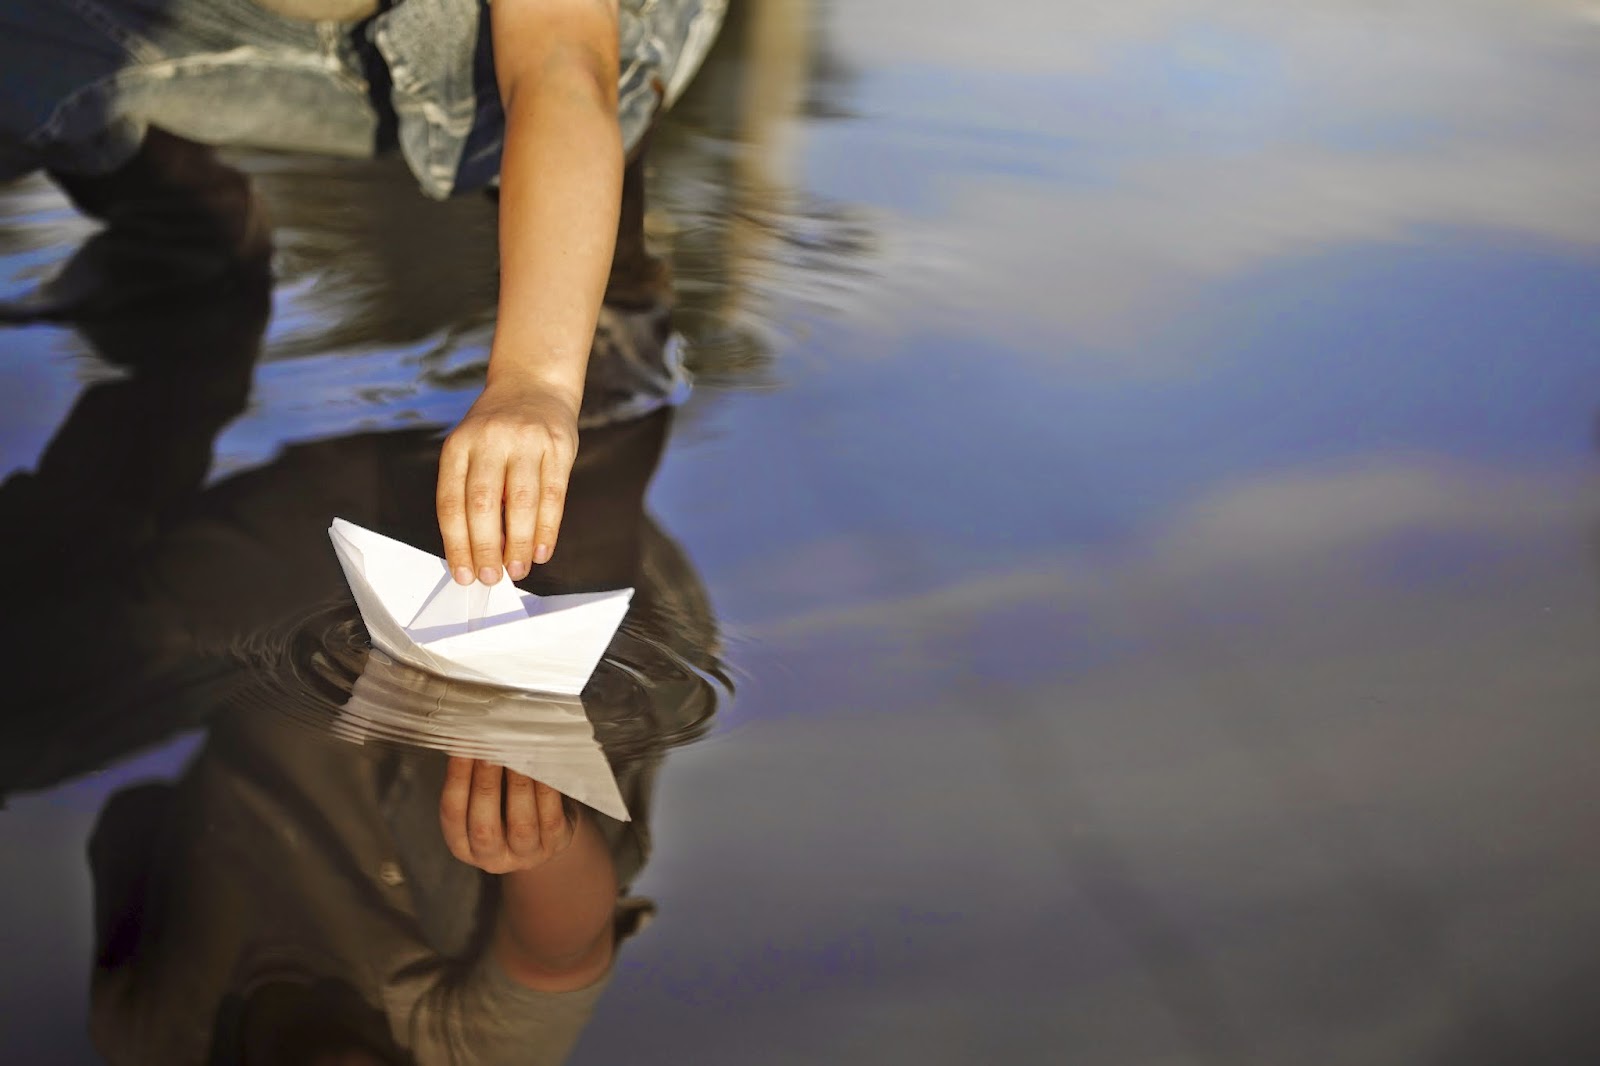 Кораблик из бумаги я по ручью пустил. Бумажный кораблик. Девушка с бумажным корабликом. Бумажный кораблик на речке. Человек в бумажном кораблике.